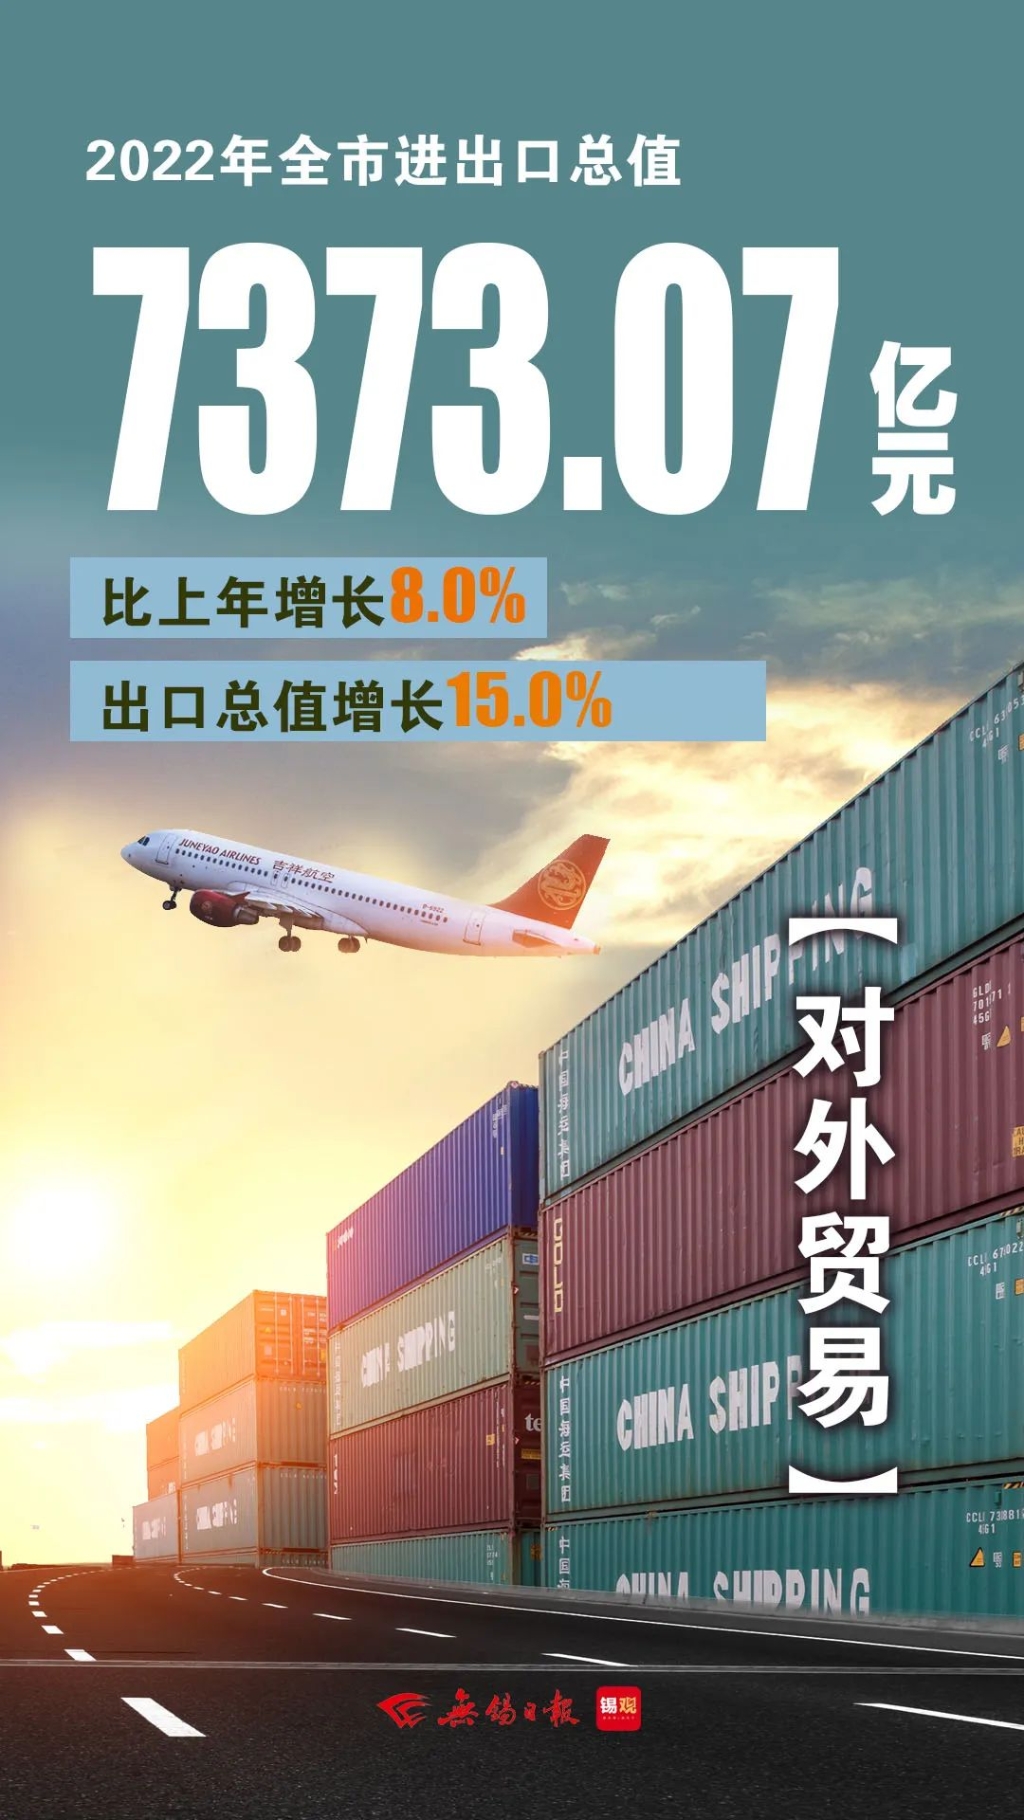 進出口總值，增長8.0%